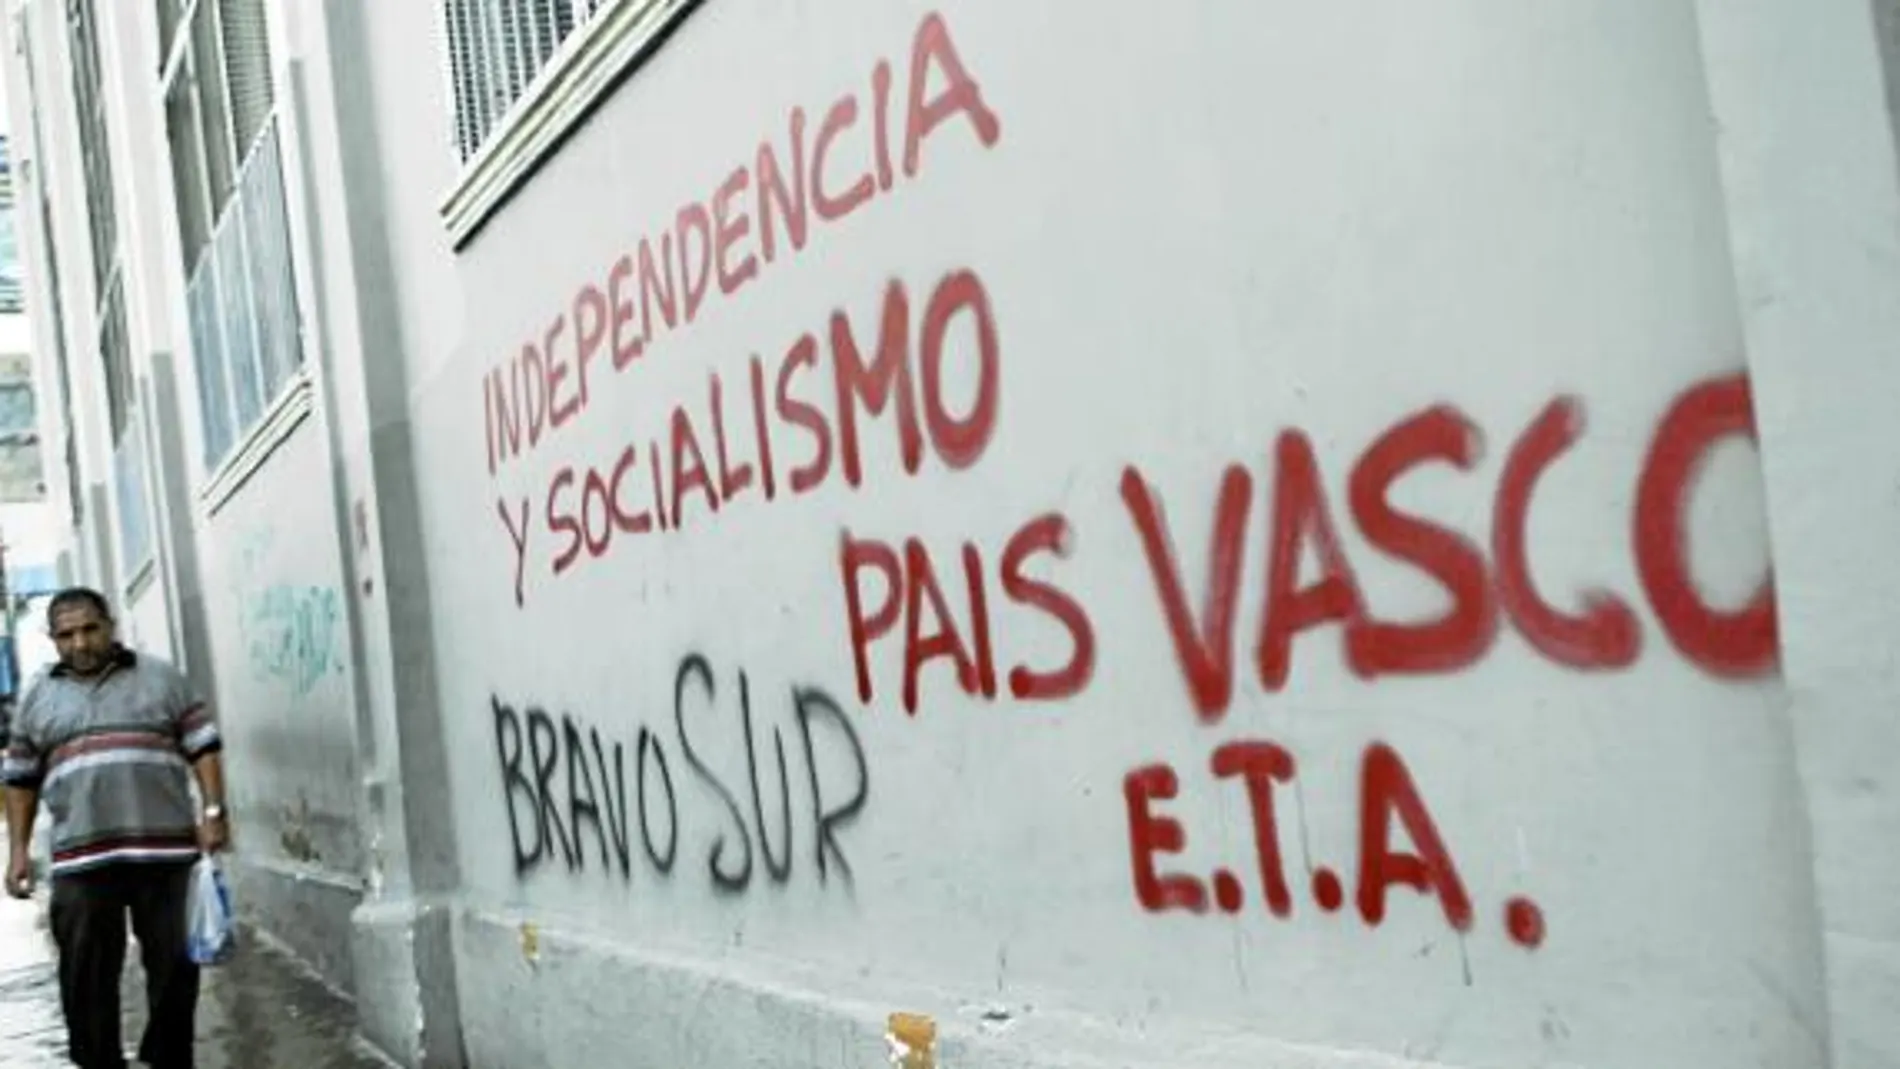 Un hombre camina en una calle de Caracas junto a una pintada que reclama la independencia del País Vasco